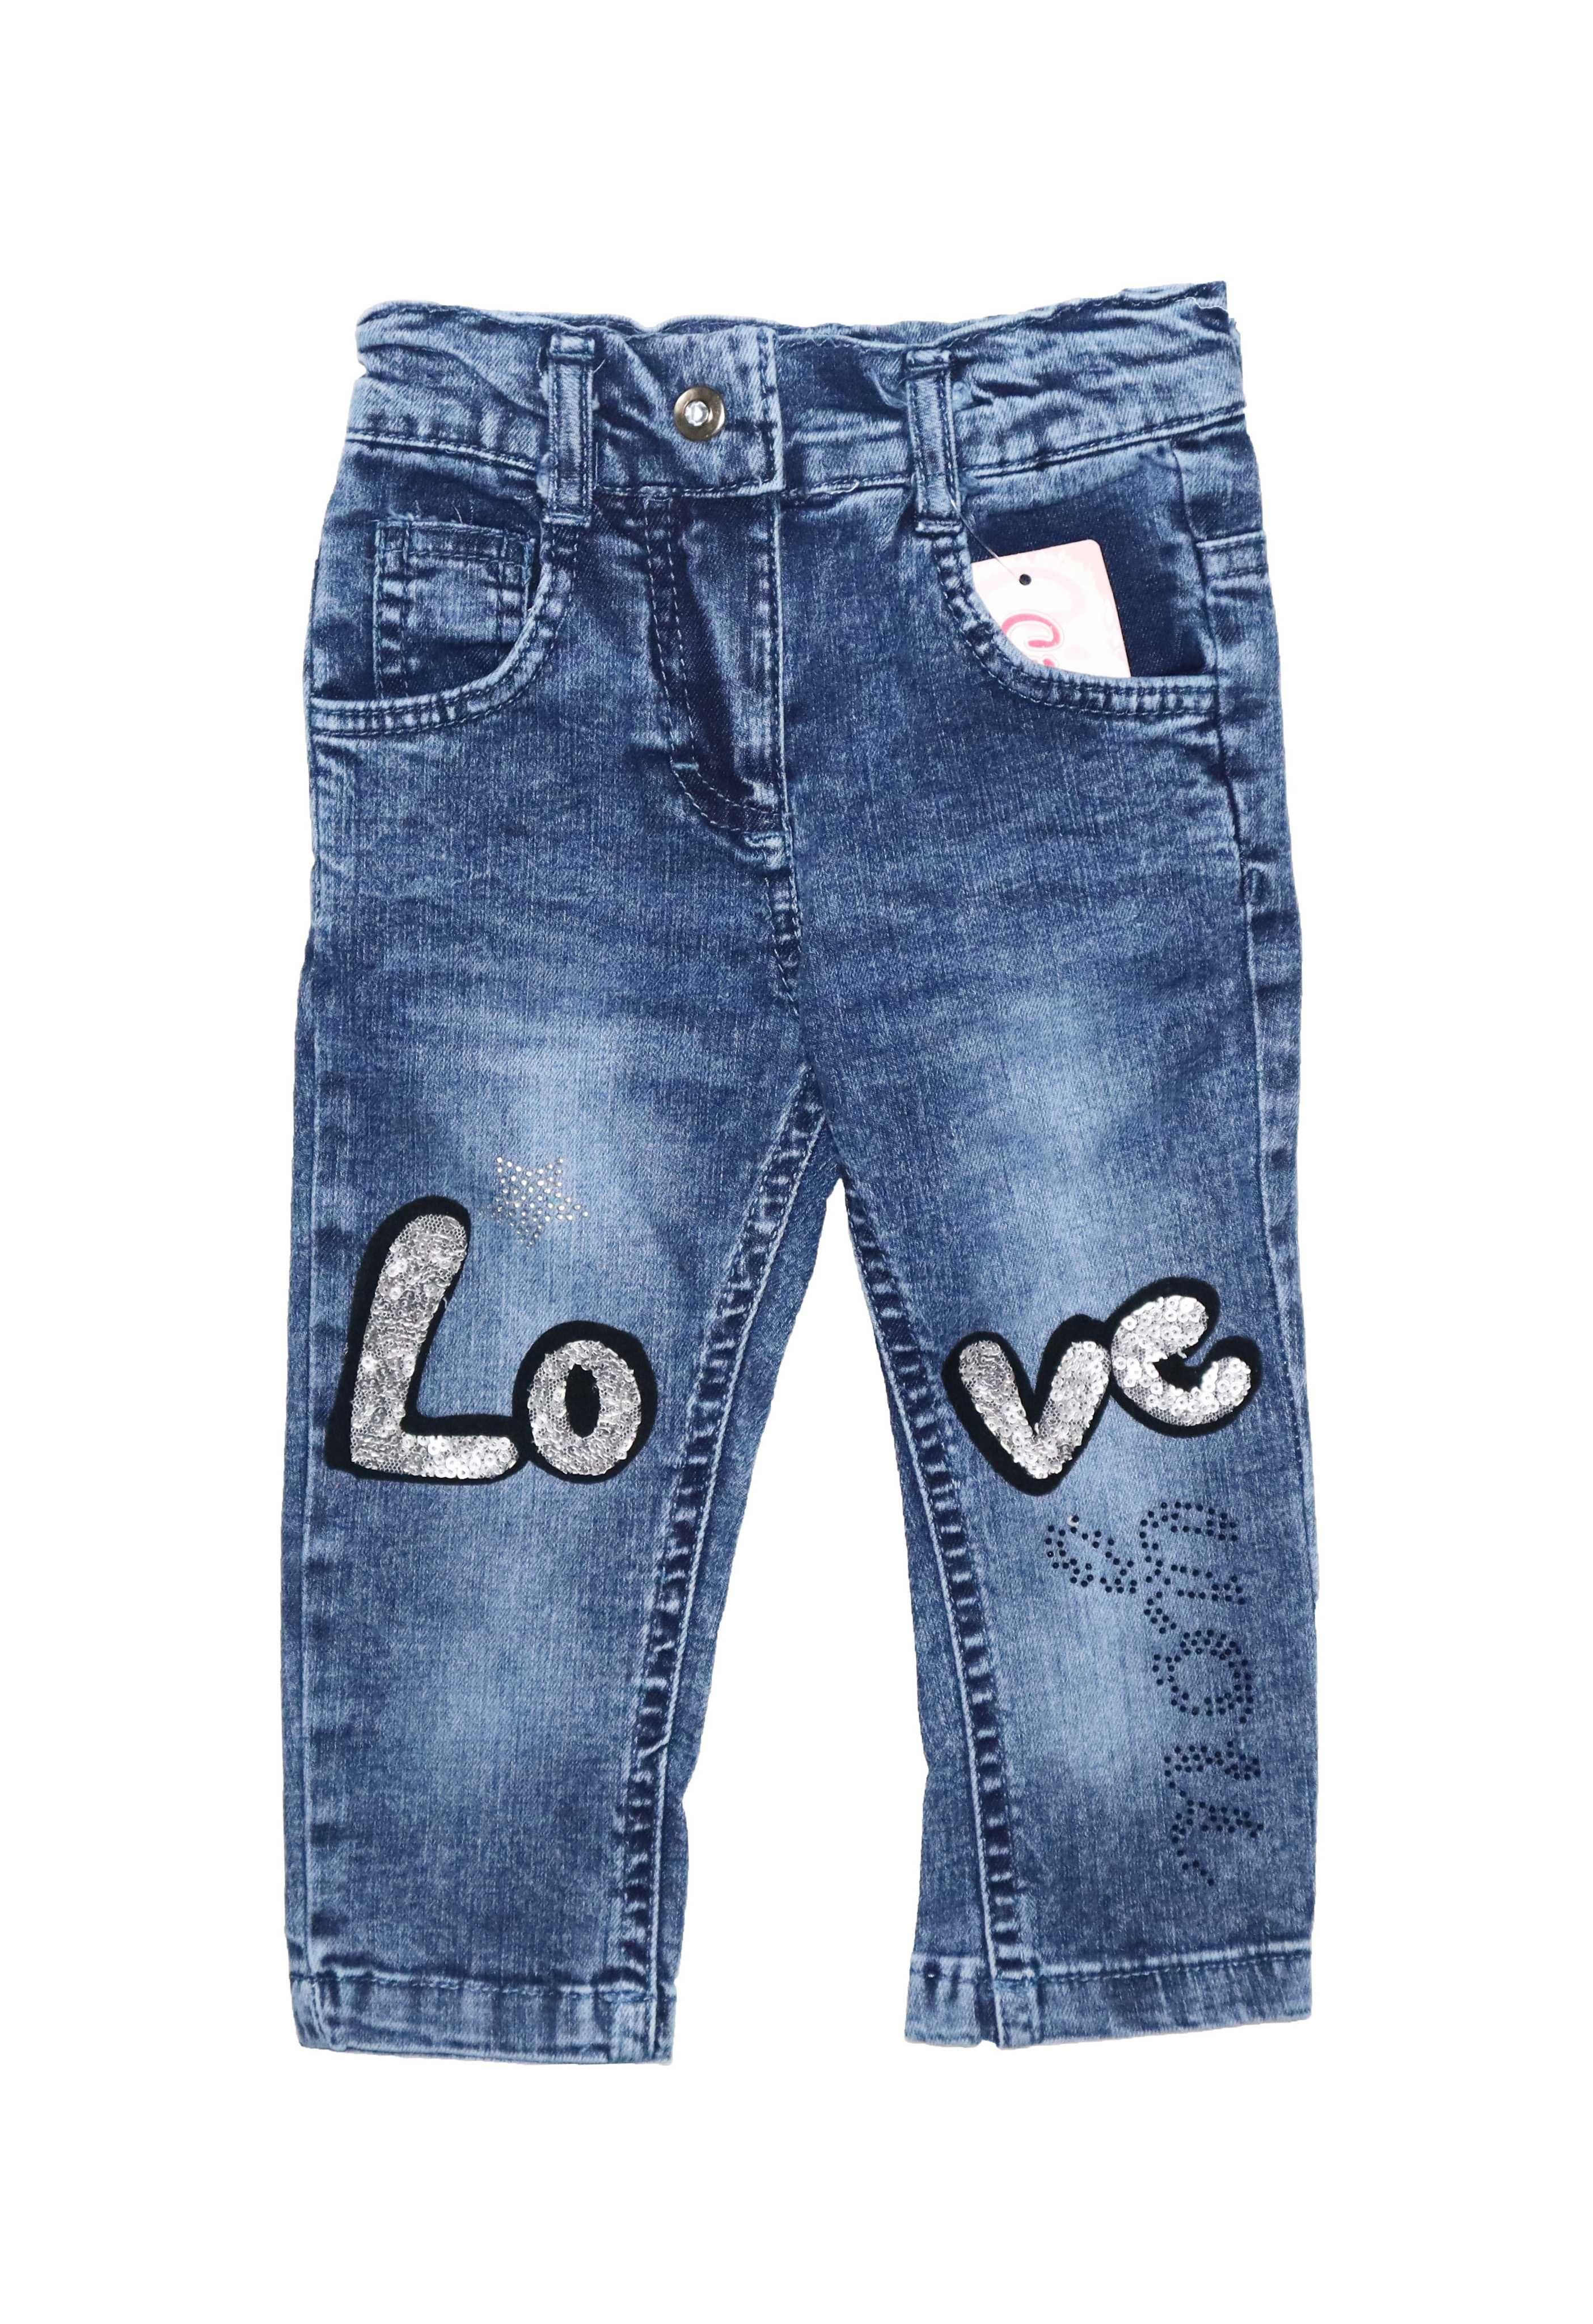 Spodnie jeansowe dla dziewczynki jeansy dziewczęce jeansy dziecięce 86